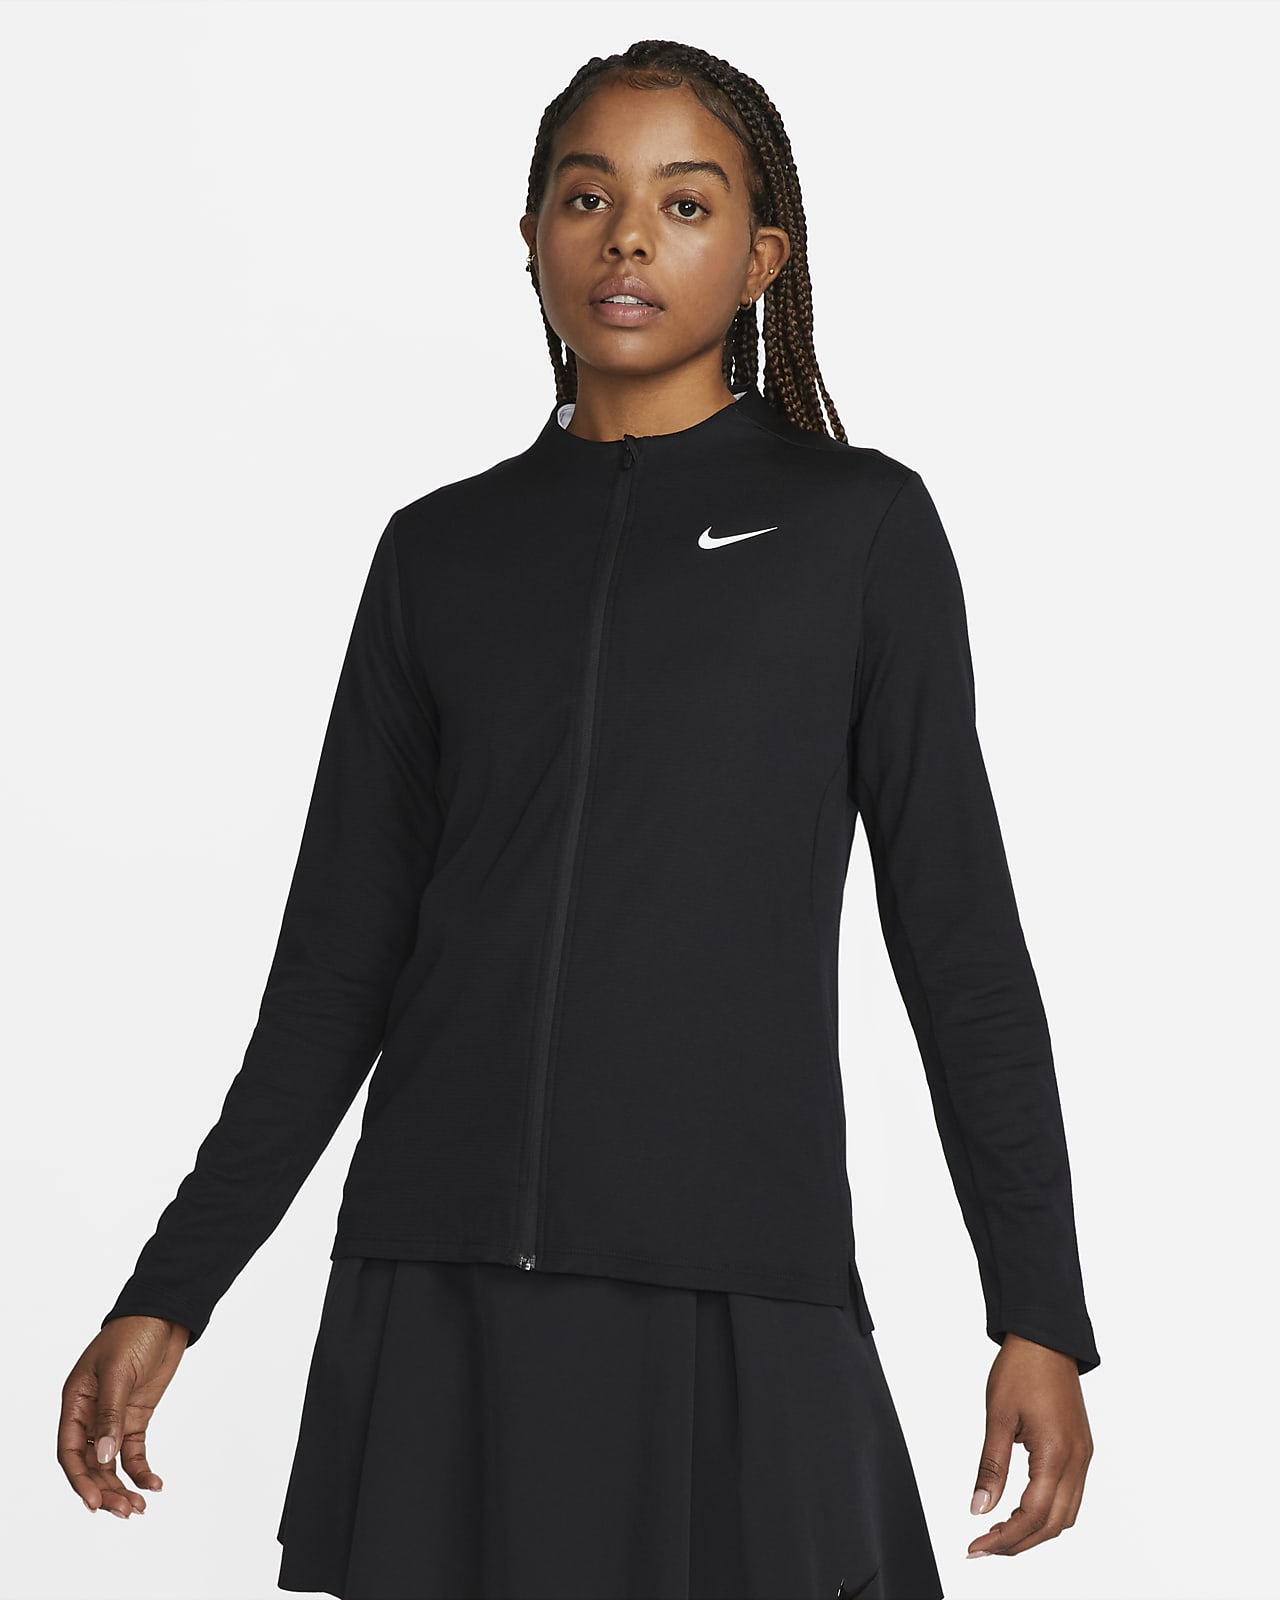 Γυναικεία μπλούζα με φερμουάρ σε όλο το μήκος Nike Dri-FIT UV Advantage